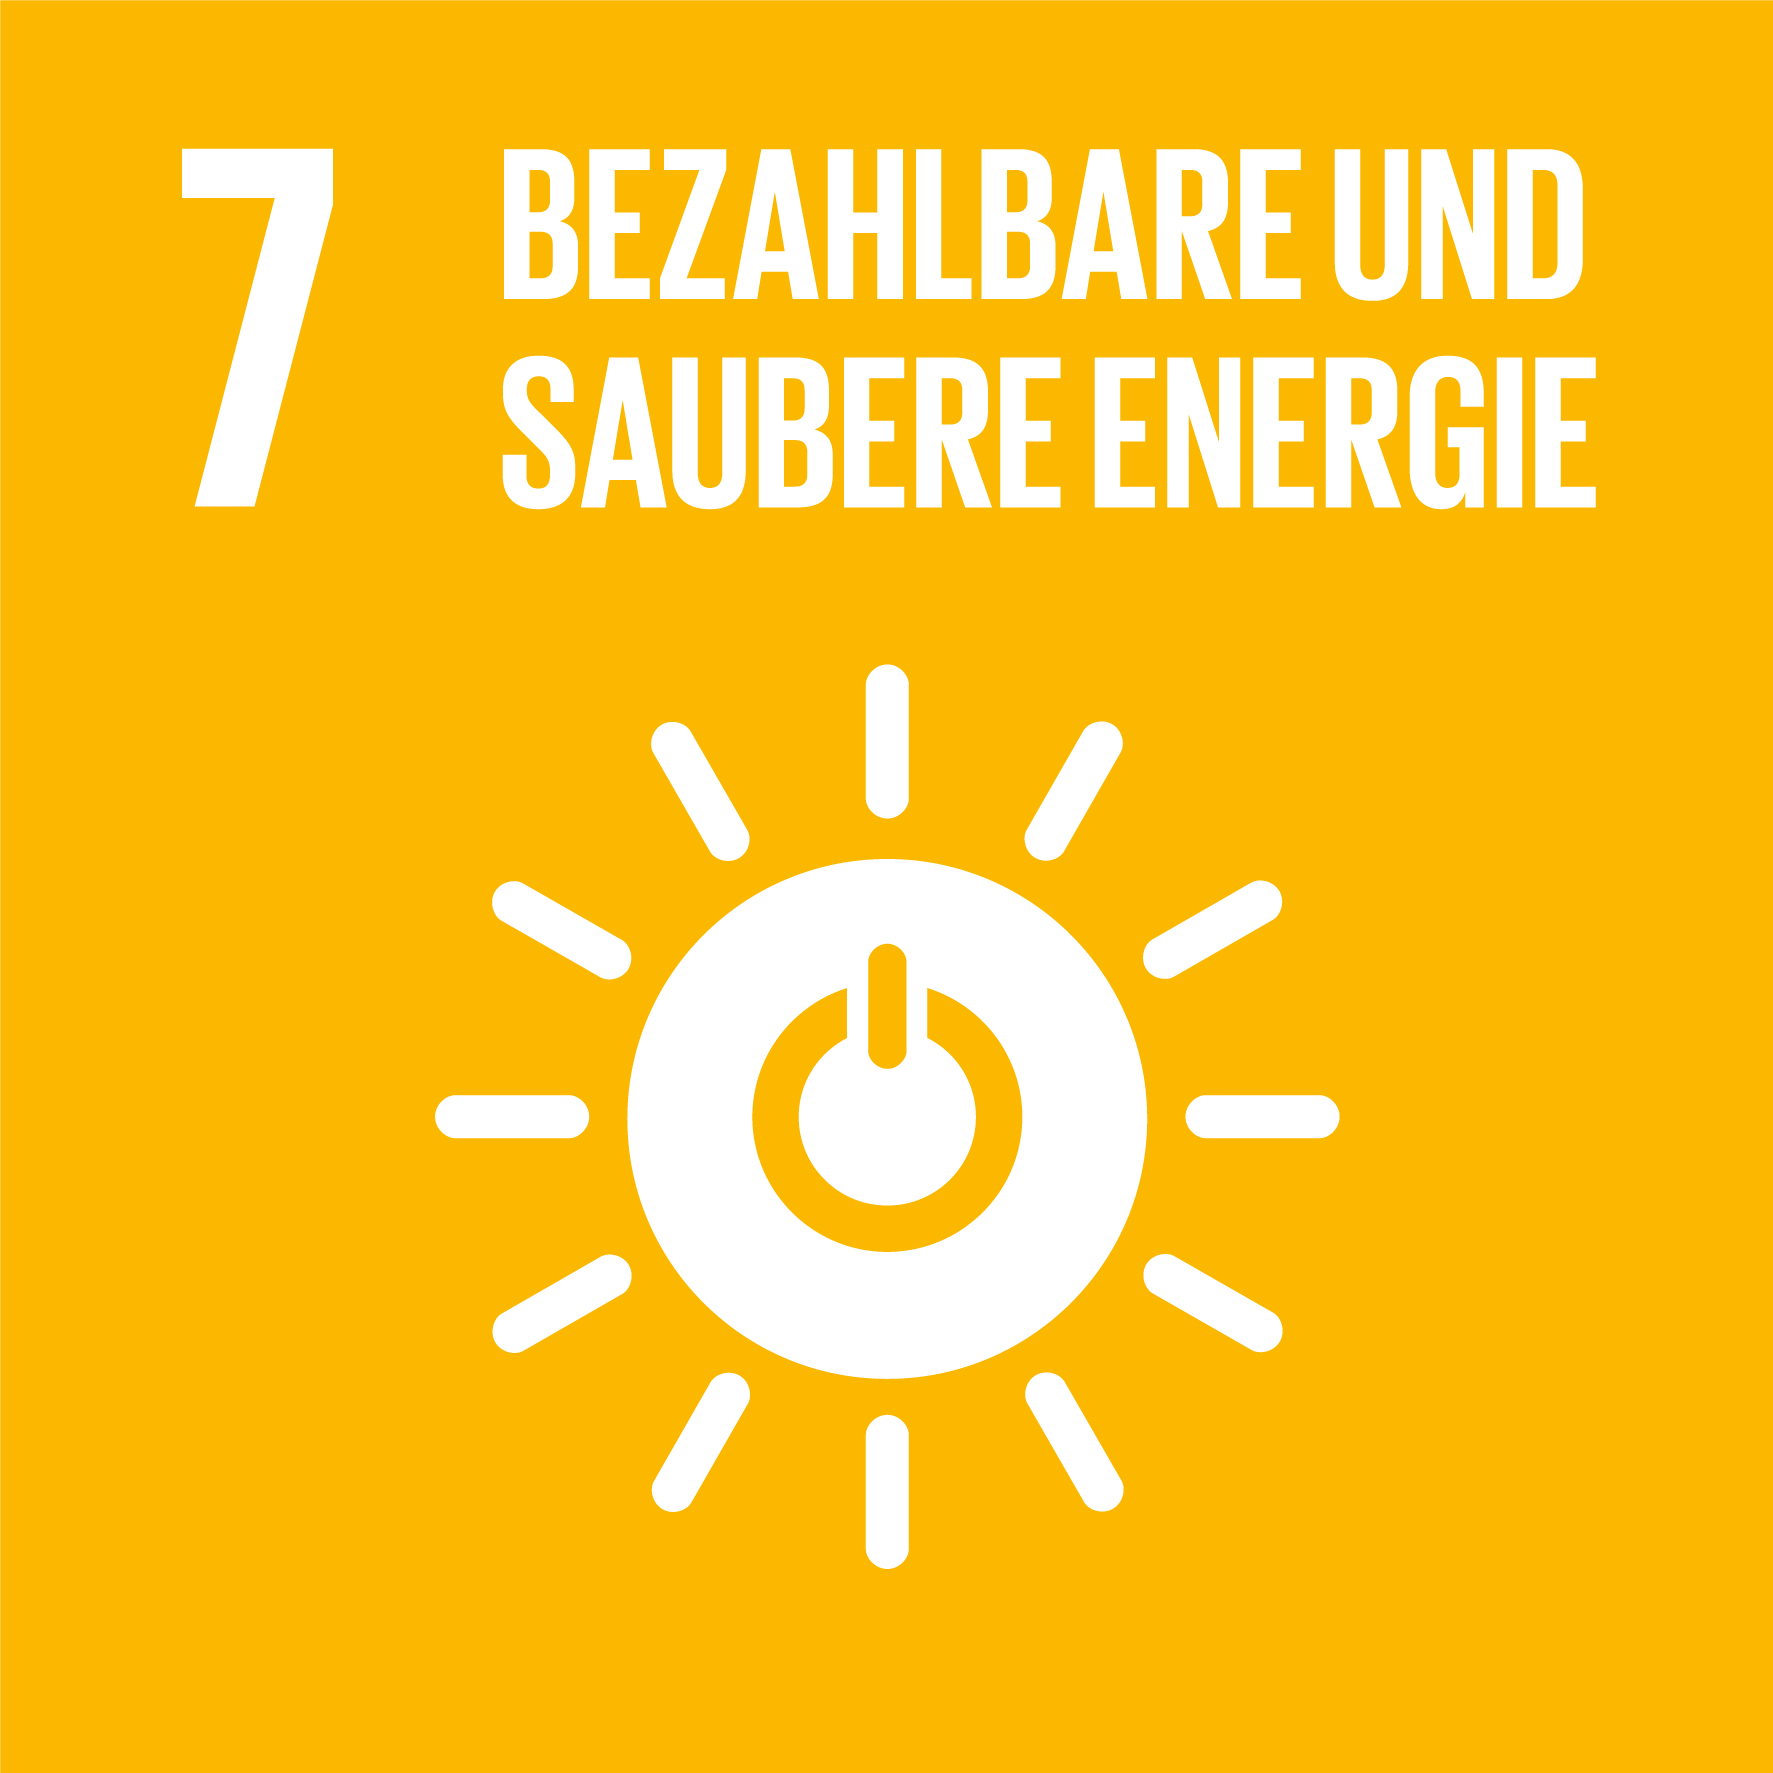 SDG7 - Bezahlbare, und saubere Energie